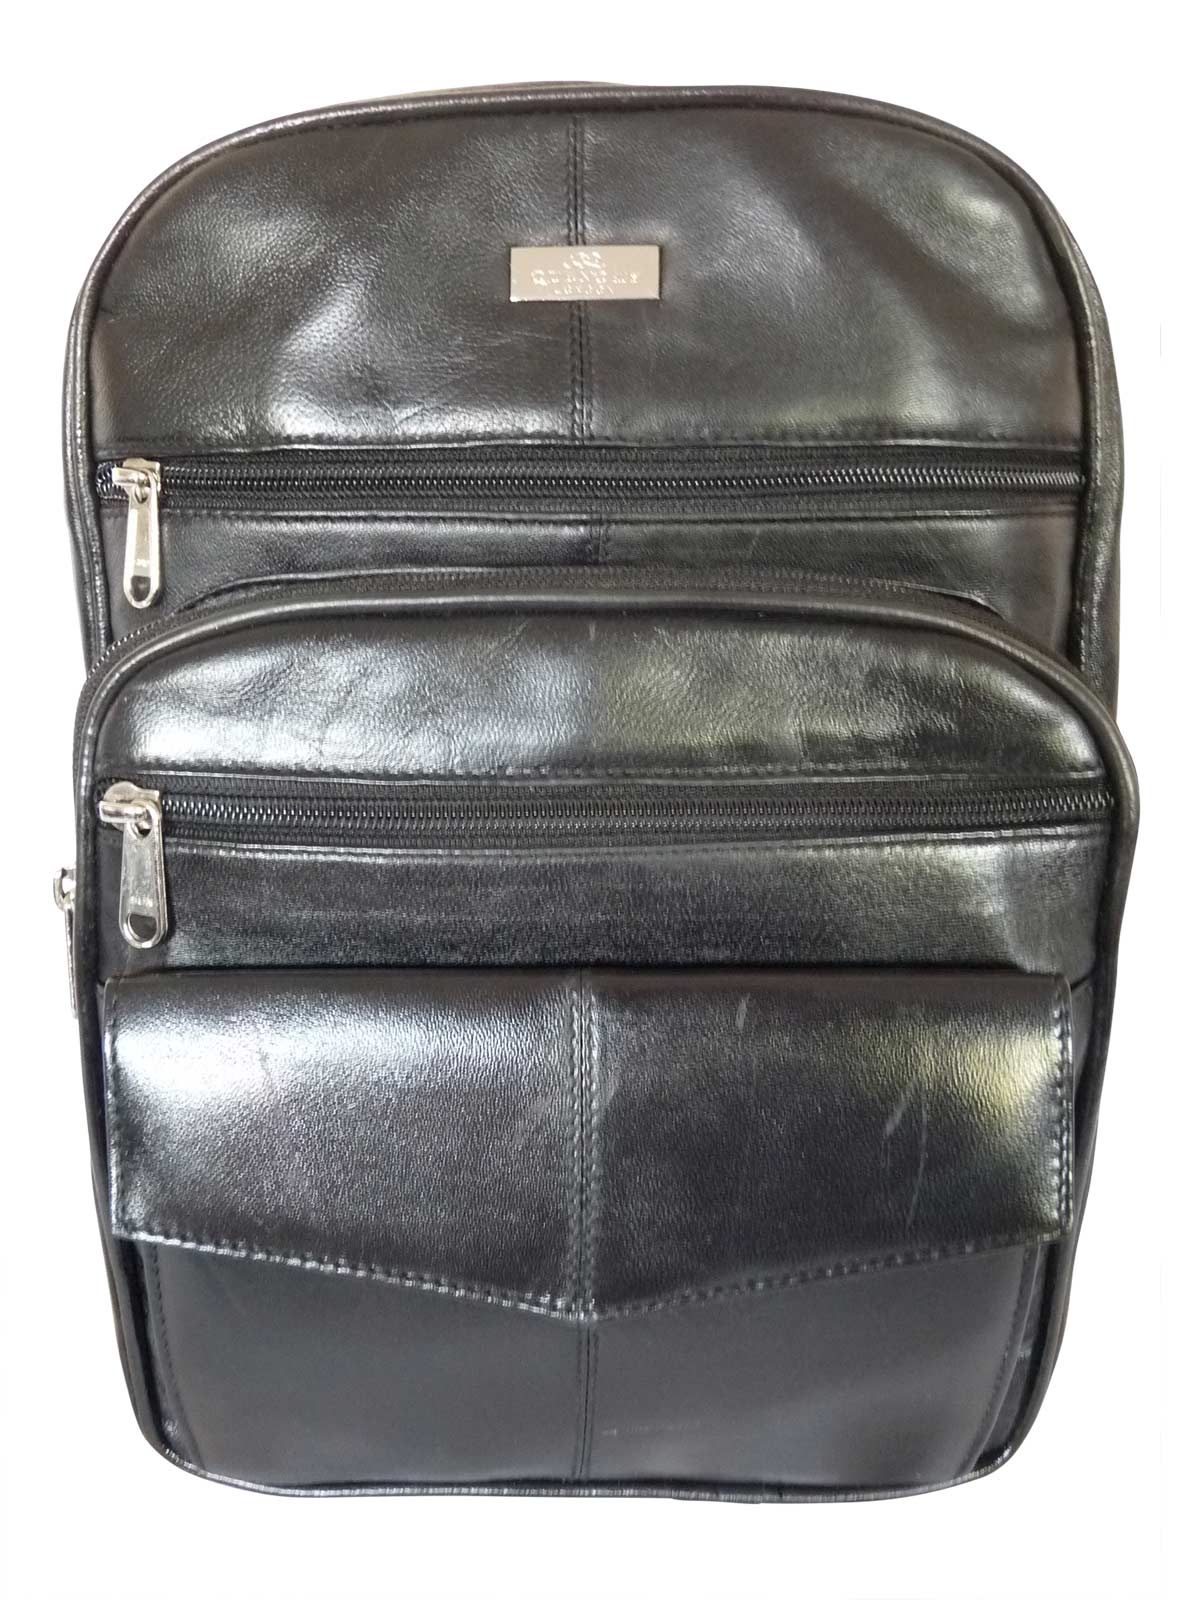 AGLOD Leather Backpack Purse for Women Designer Ladies Shoulder Bag Fashion  Faux | eBay